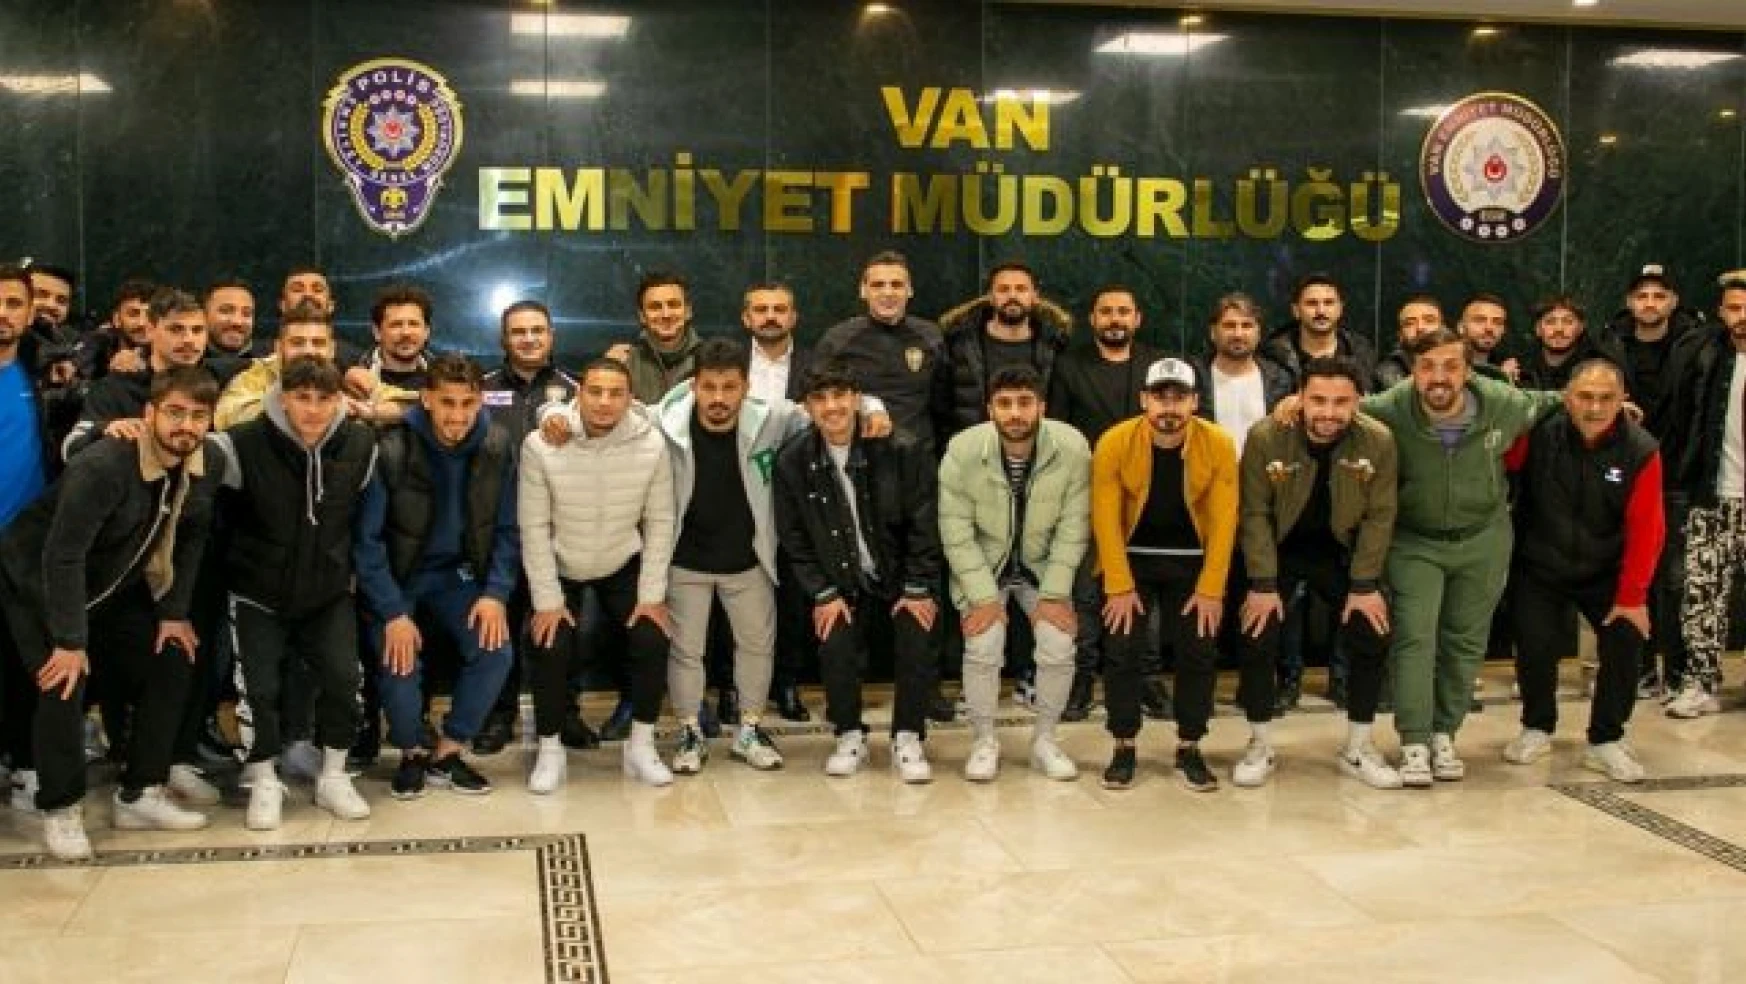 Emniyet Müdürü Atanur Aydın, Vansporlu futbolcularla iftarda buluştu